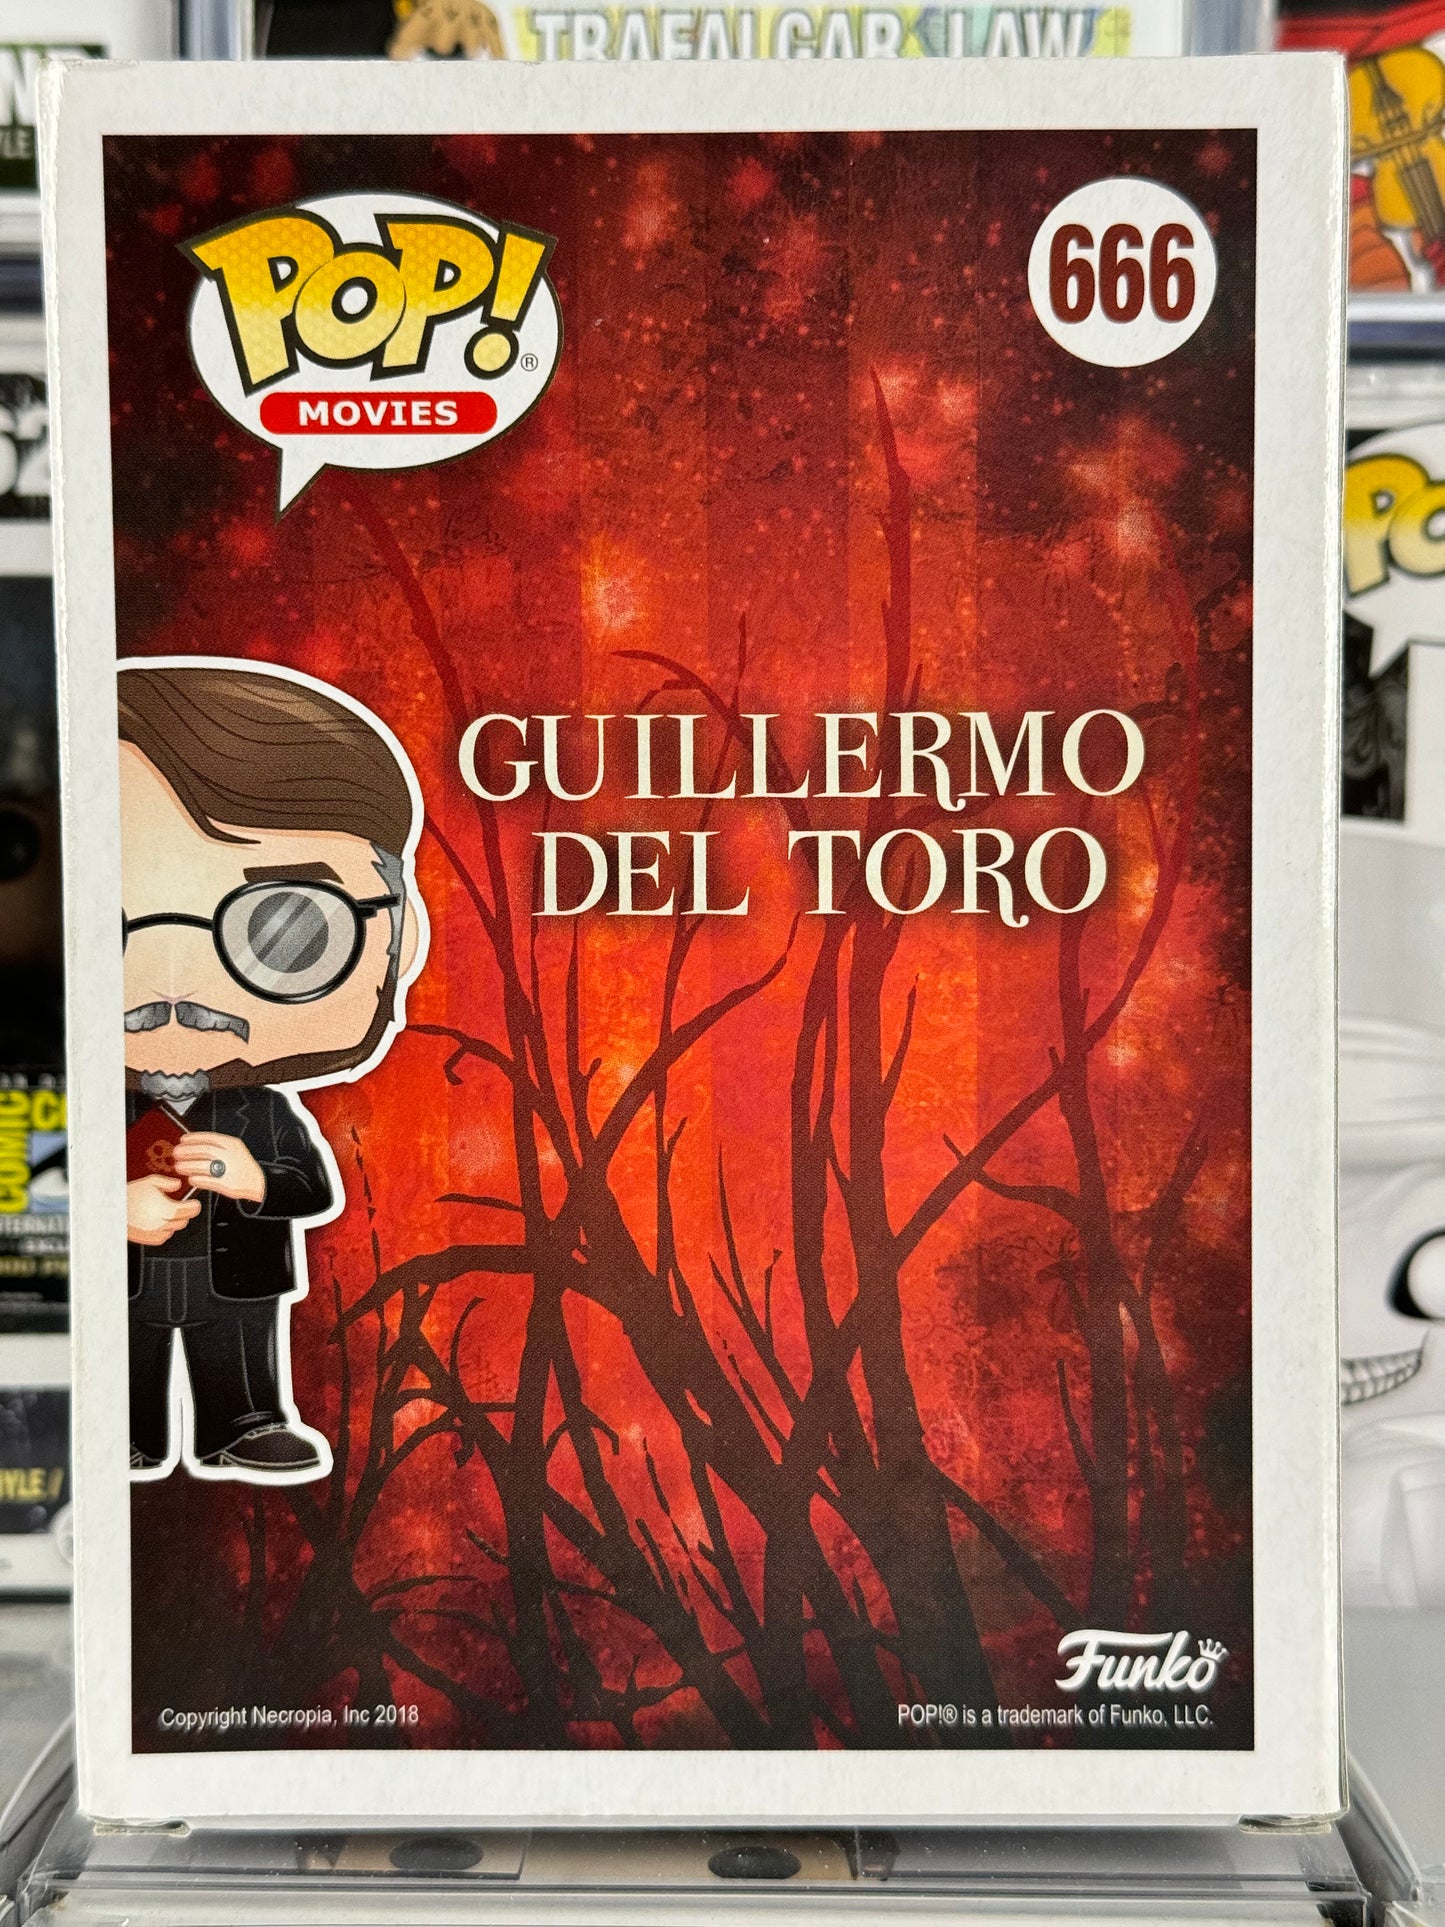 Director - Guillermo Del Toro (666) Vaulted